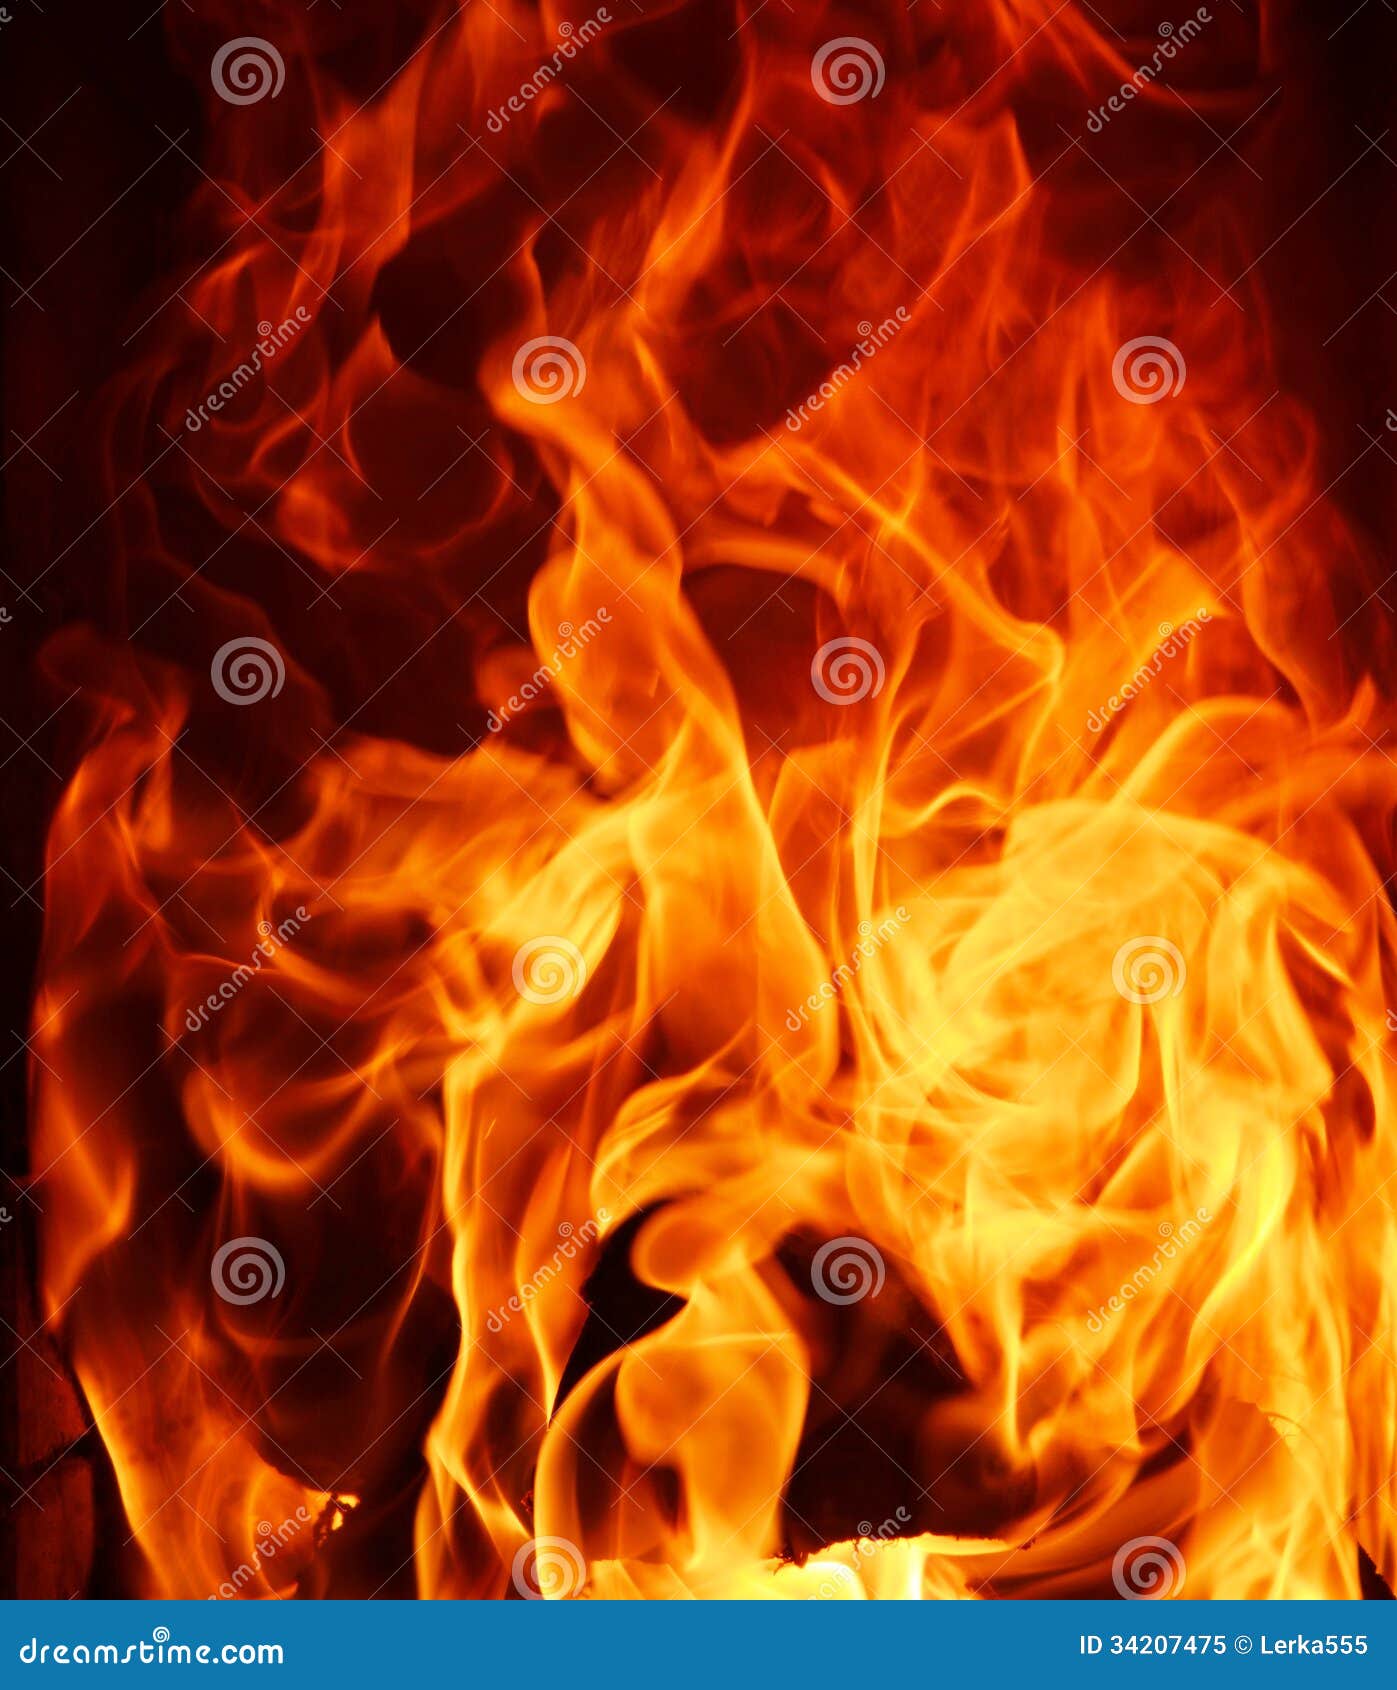 Cierre de fuego y llamas Pared PosterCasa Pared Arte Imagen de decoración del hogar